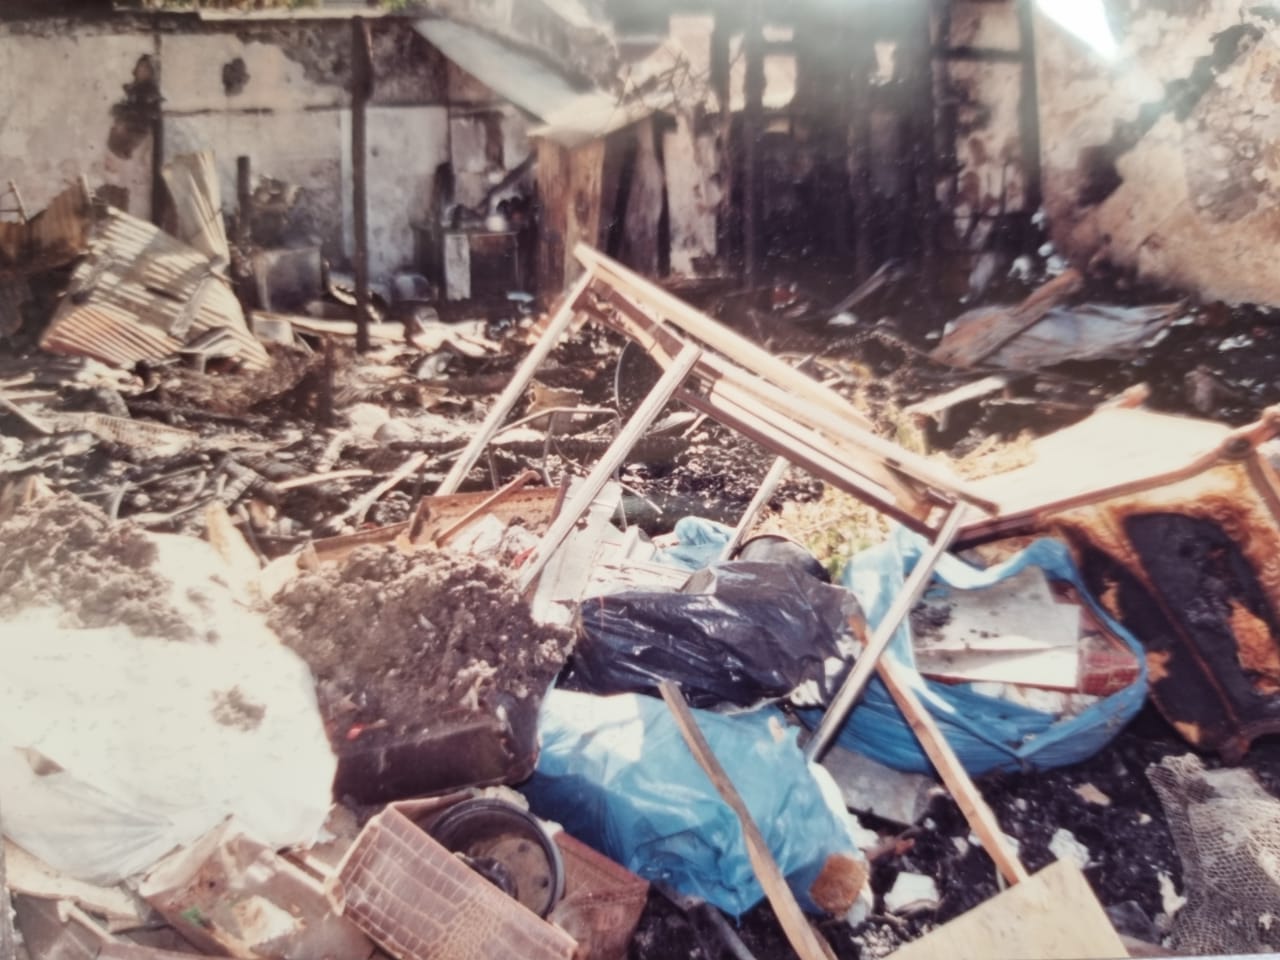     30 ans après, Basse-Terre reste meurtrie par l’incendie qui a fait 7 morts, dont 6 enfants

